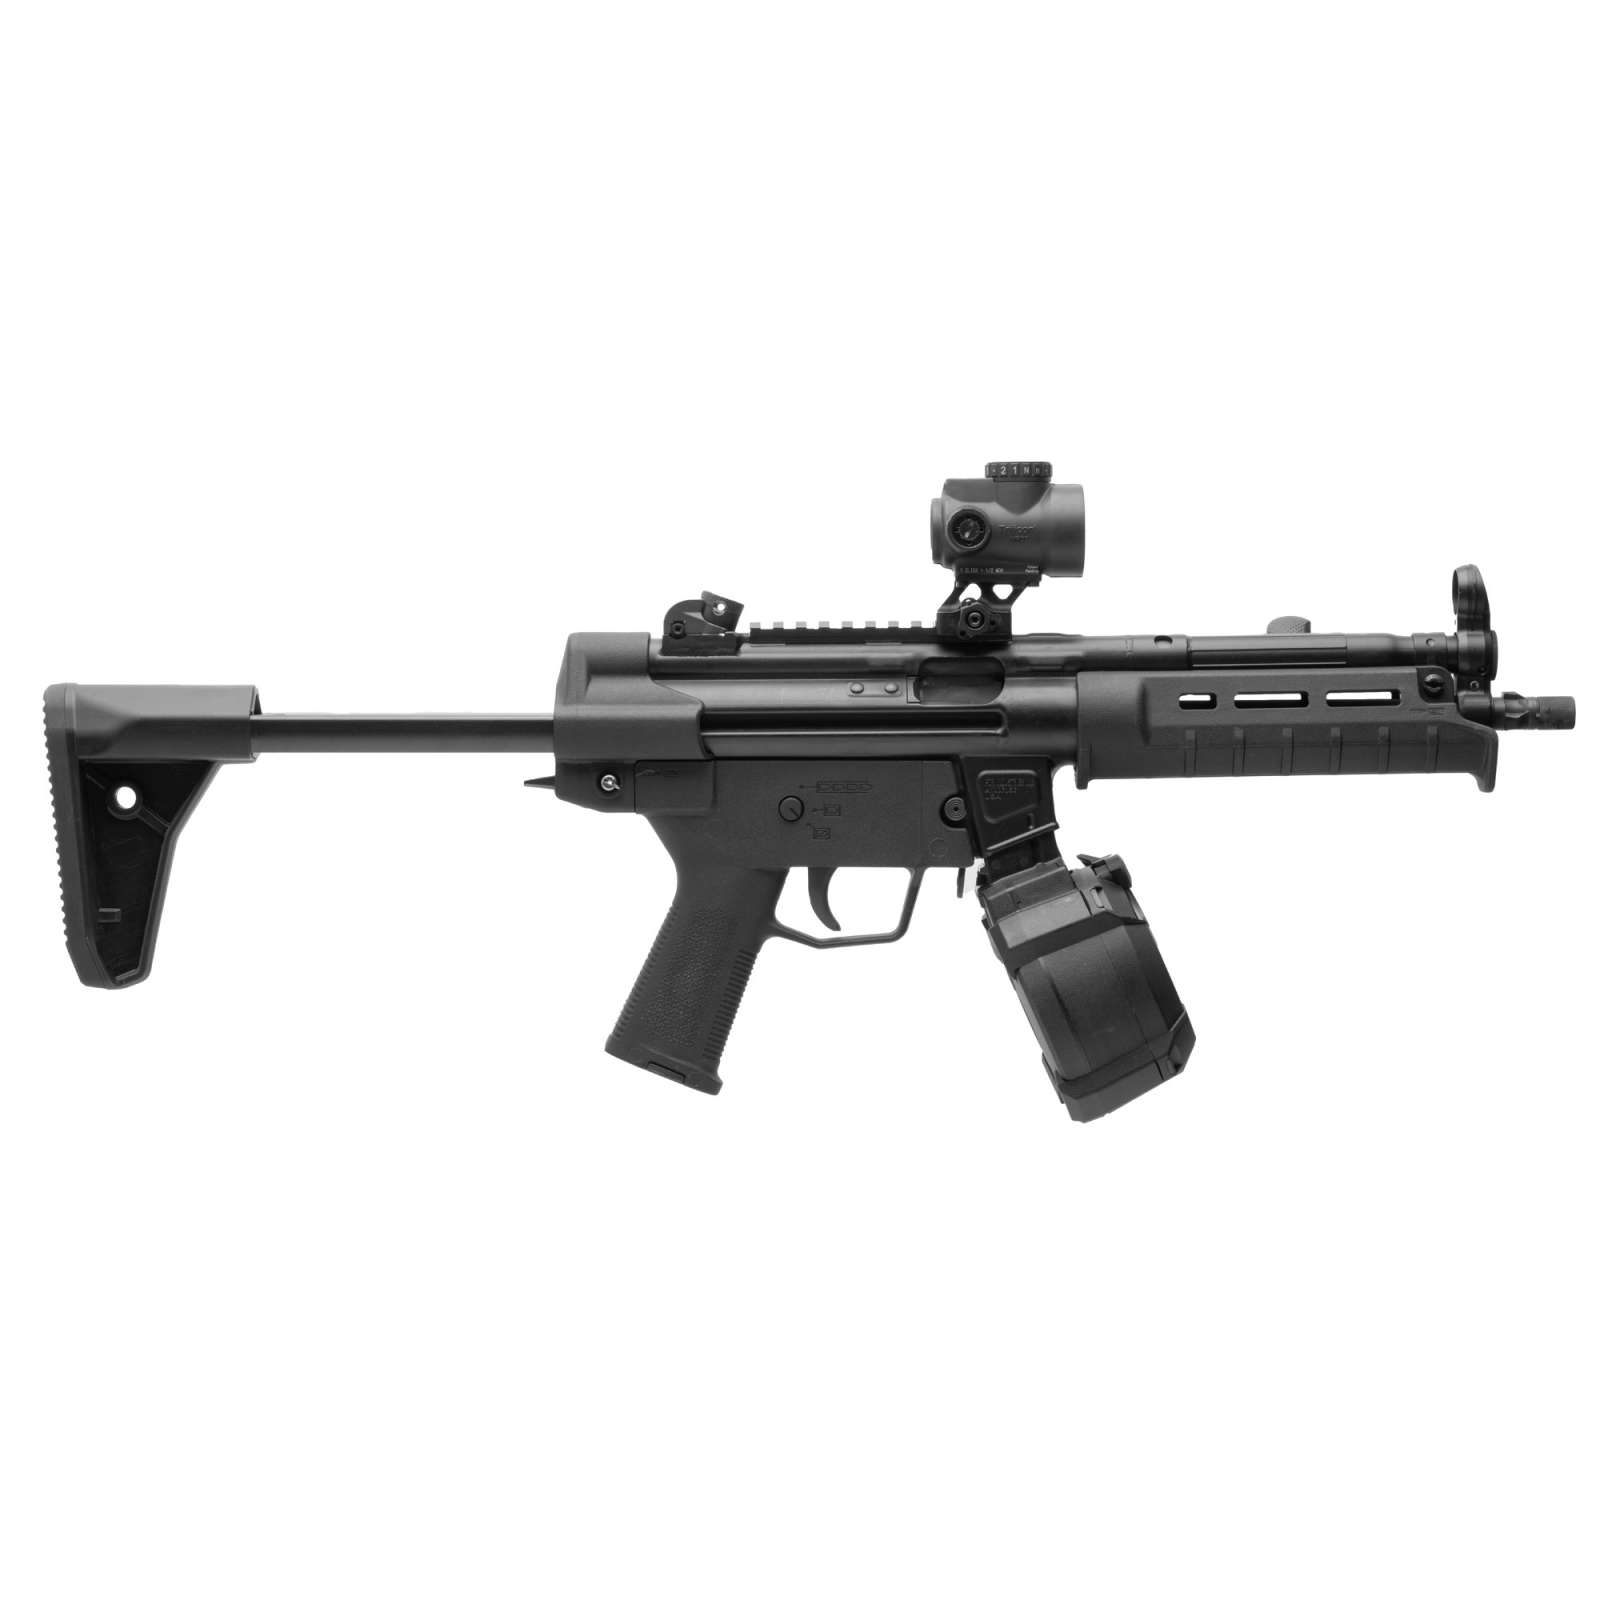 MAGPUL SL STK HK94/MP5 BLK | Range USA